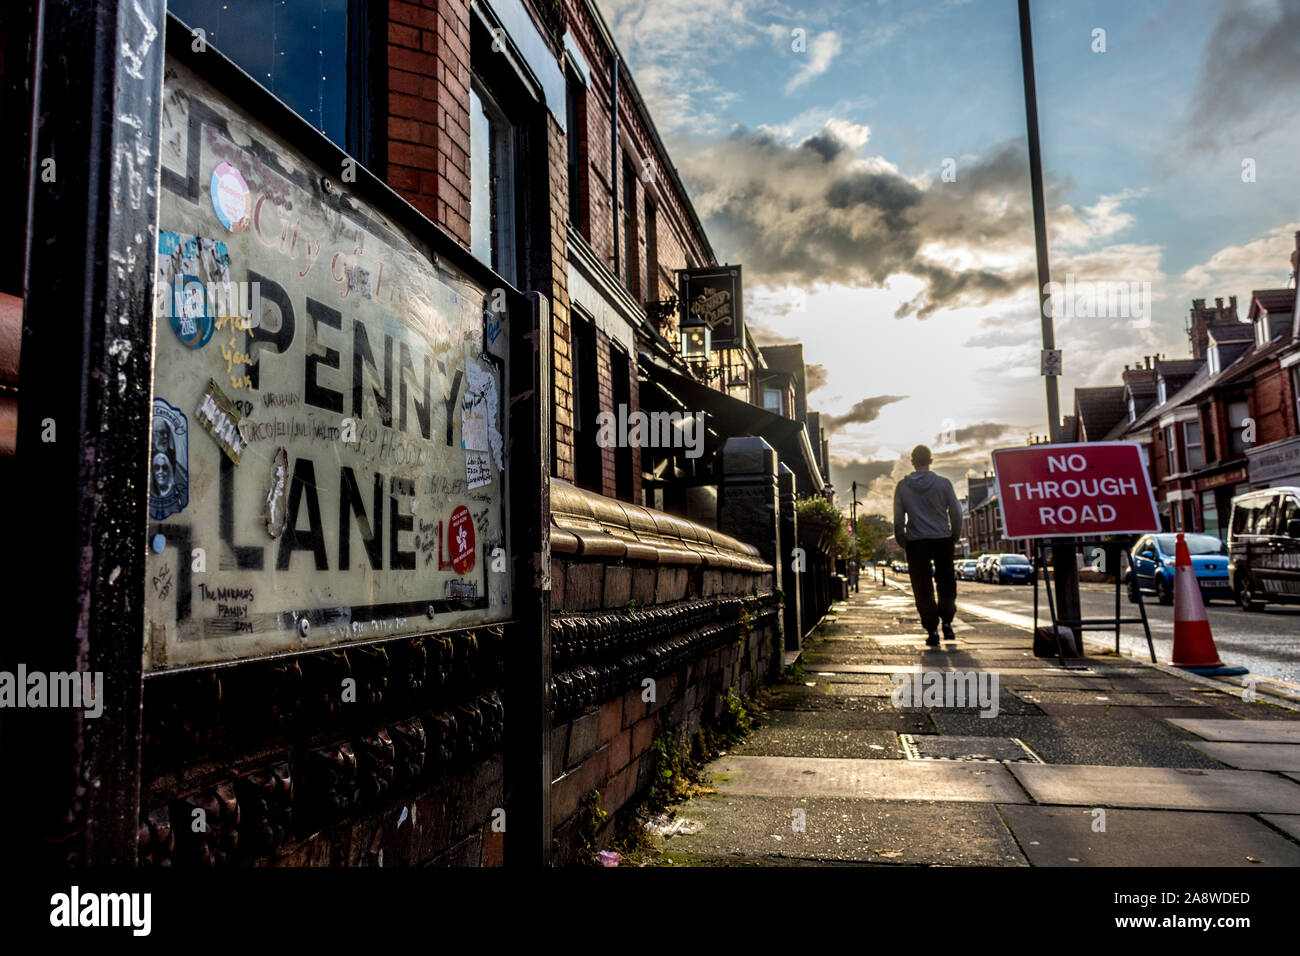 Penny Lane segno, Liverpool, Regno Unito. La strada resa famosa in una canzone dei Beatles. Foto Stock